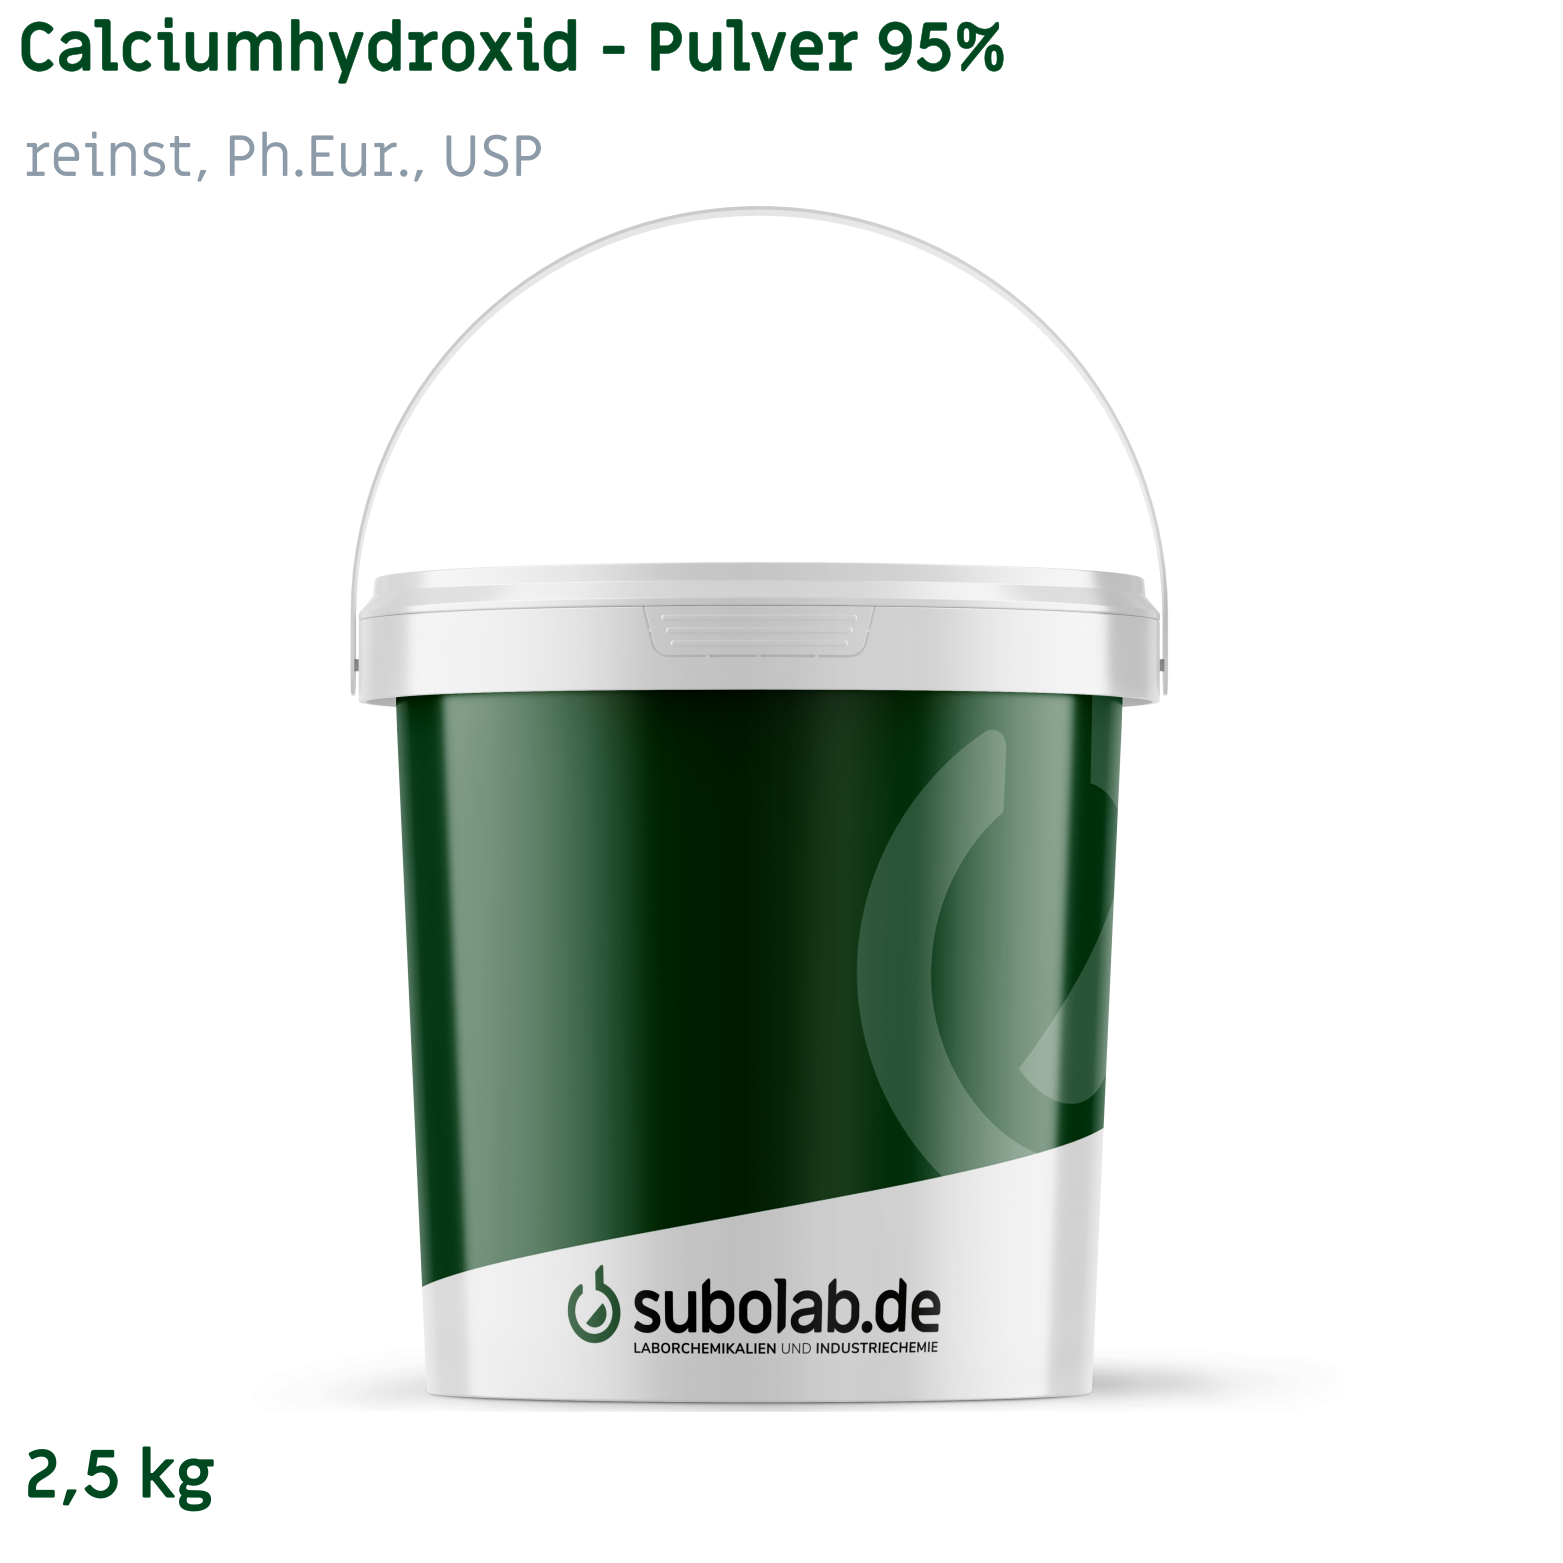 Bild von Calciumhydroxid - Pulver 95% reinst, Ph.Eur., USP (2,5 kg)